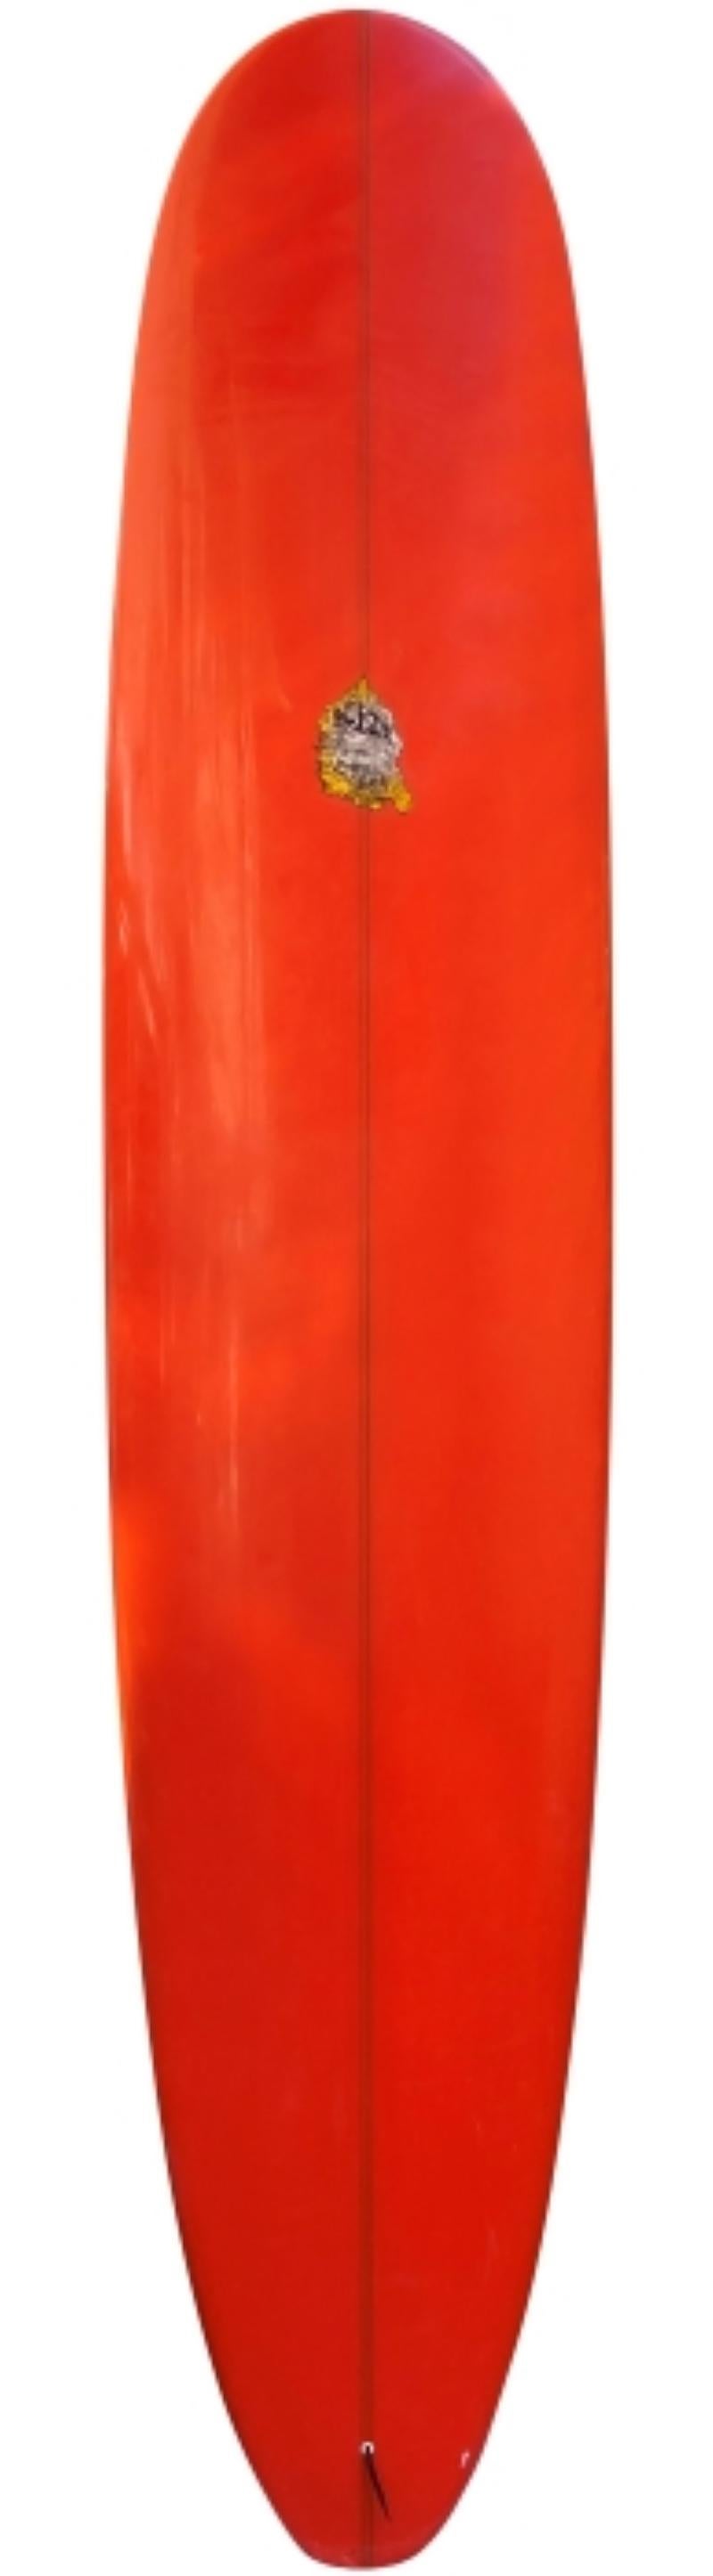 Hobie Longboard, geformt von dem verstorbenen Terry Martin (1937-2012). Mit mythischem Artwork von Tyler Warren, inspiriert von der Szene 